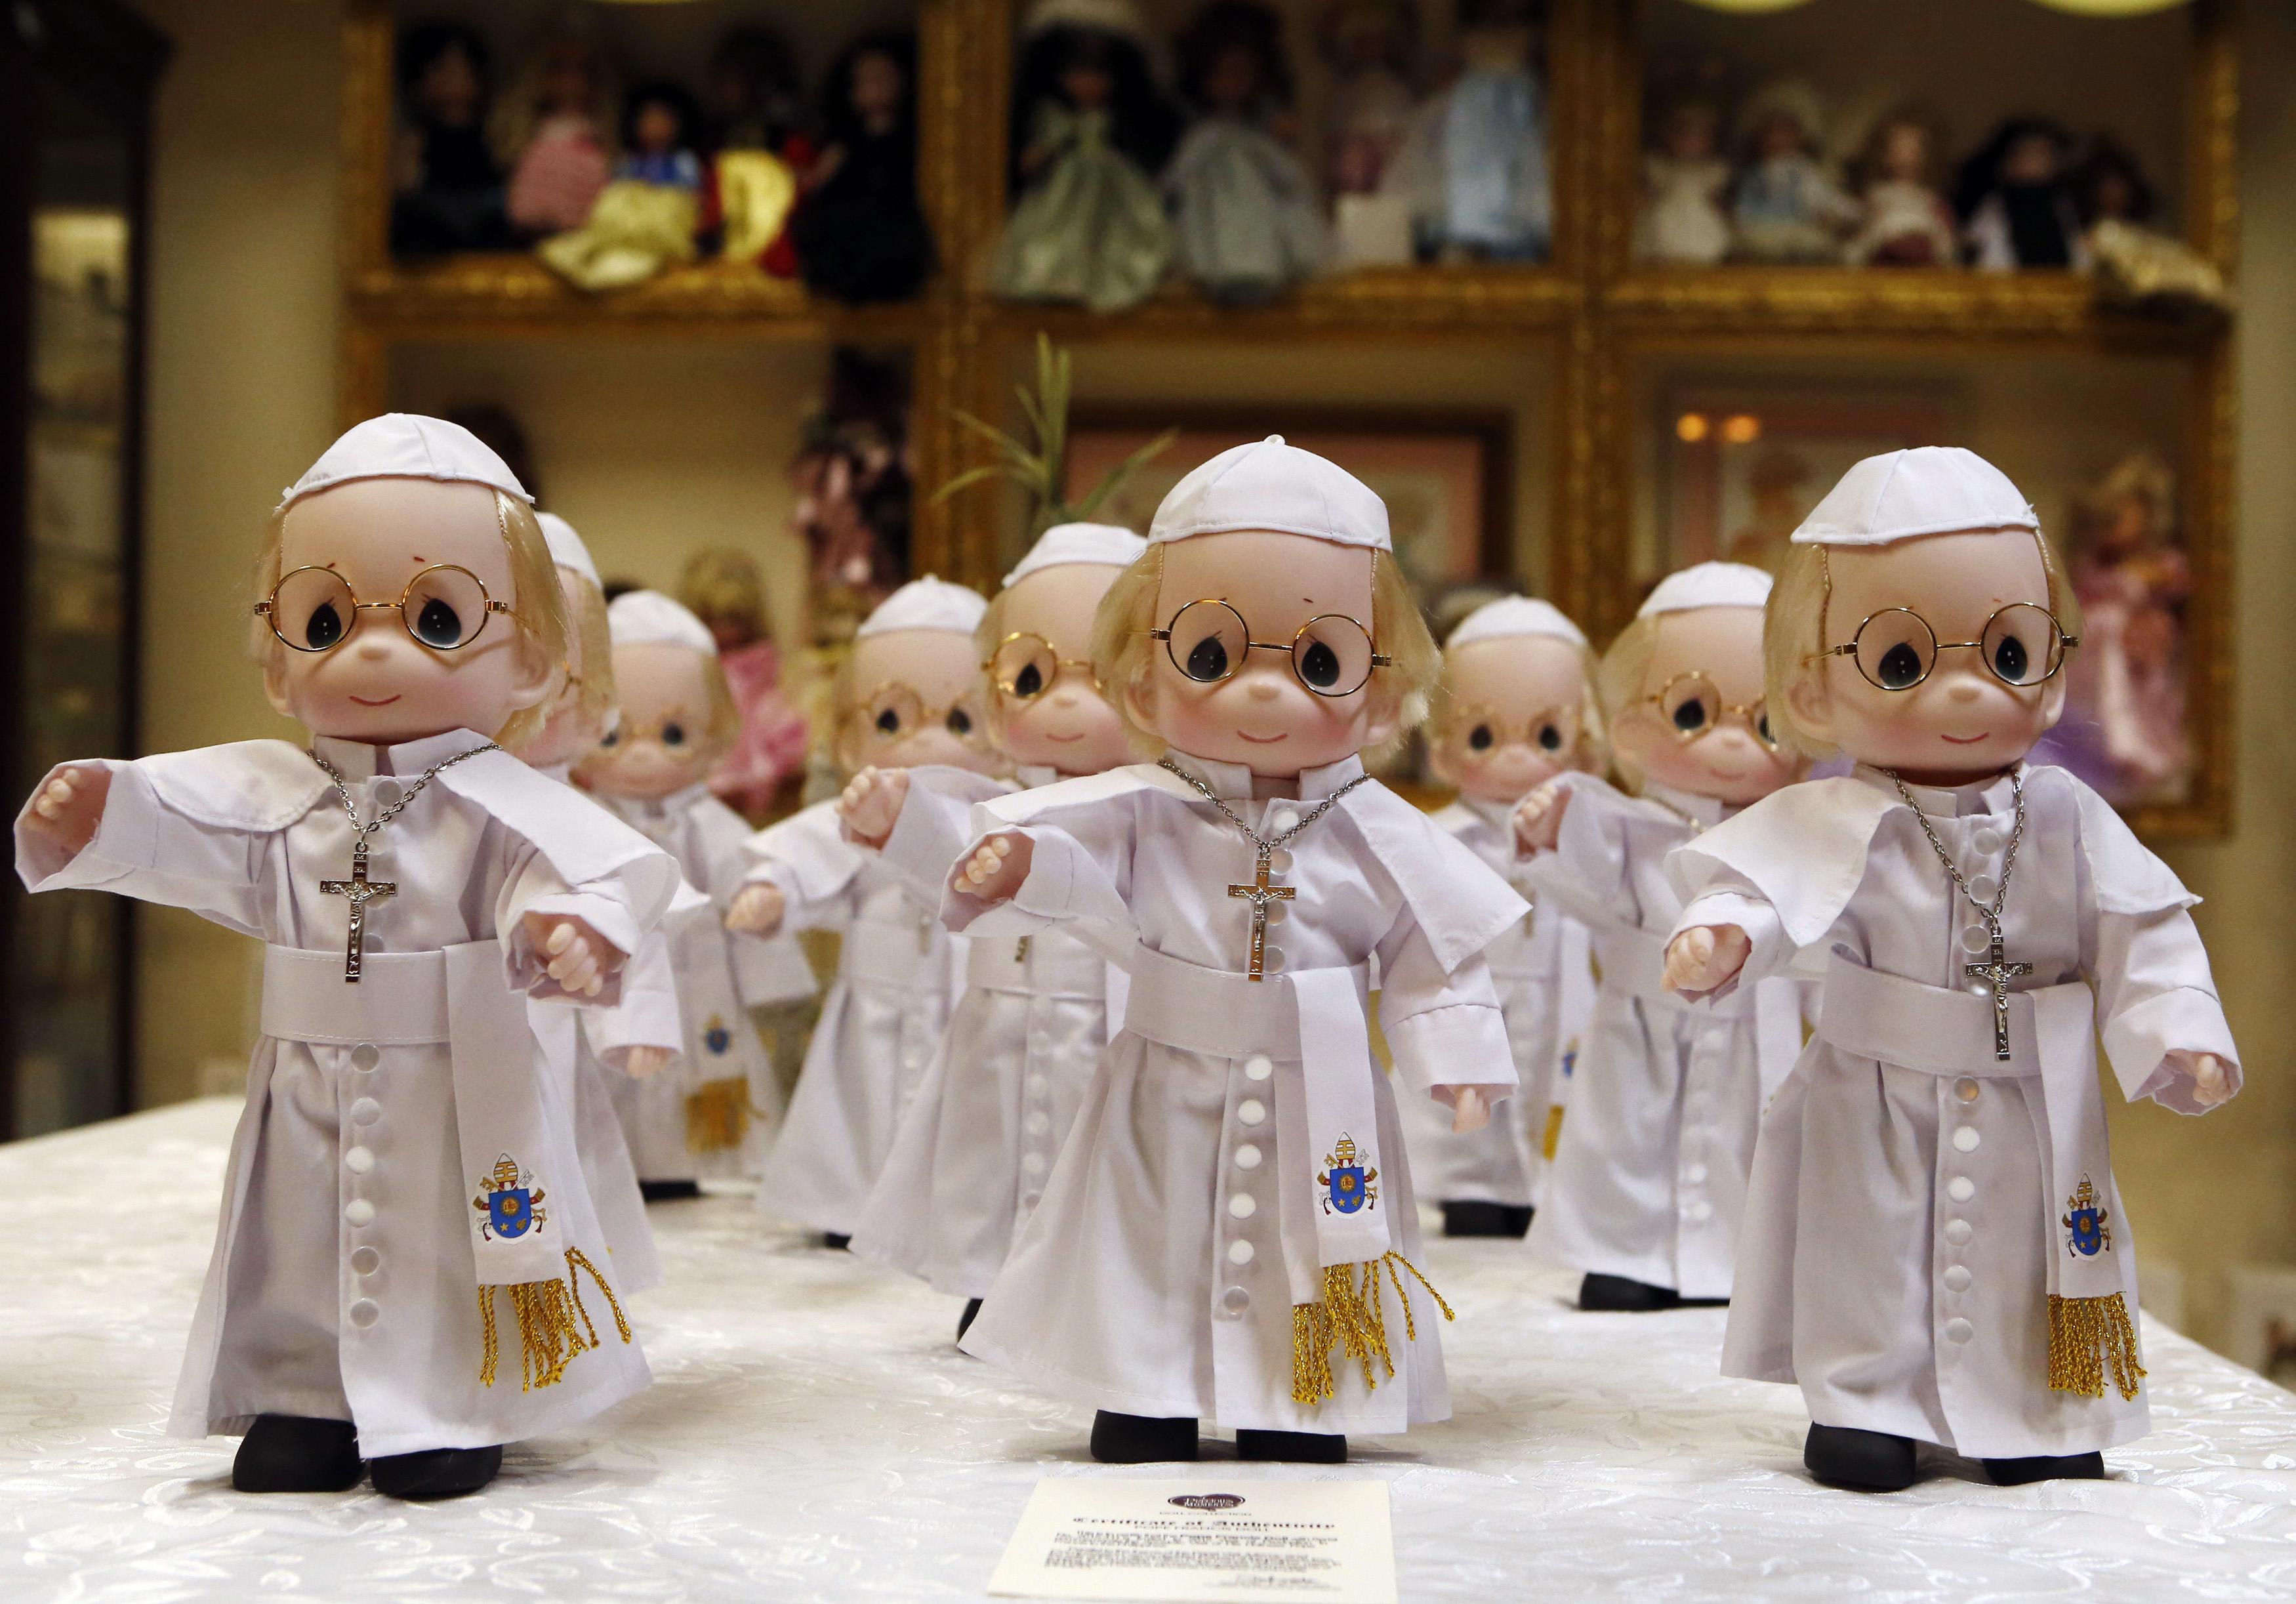 Muñecos del papa Francisco invaden Filipinas (Fotos)